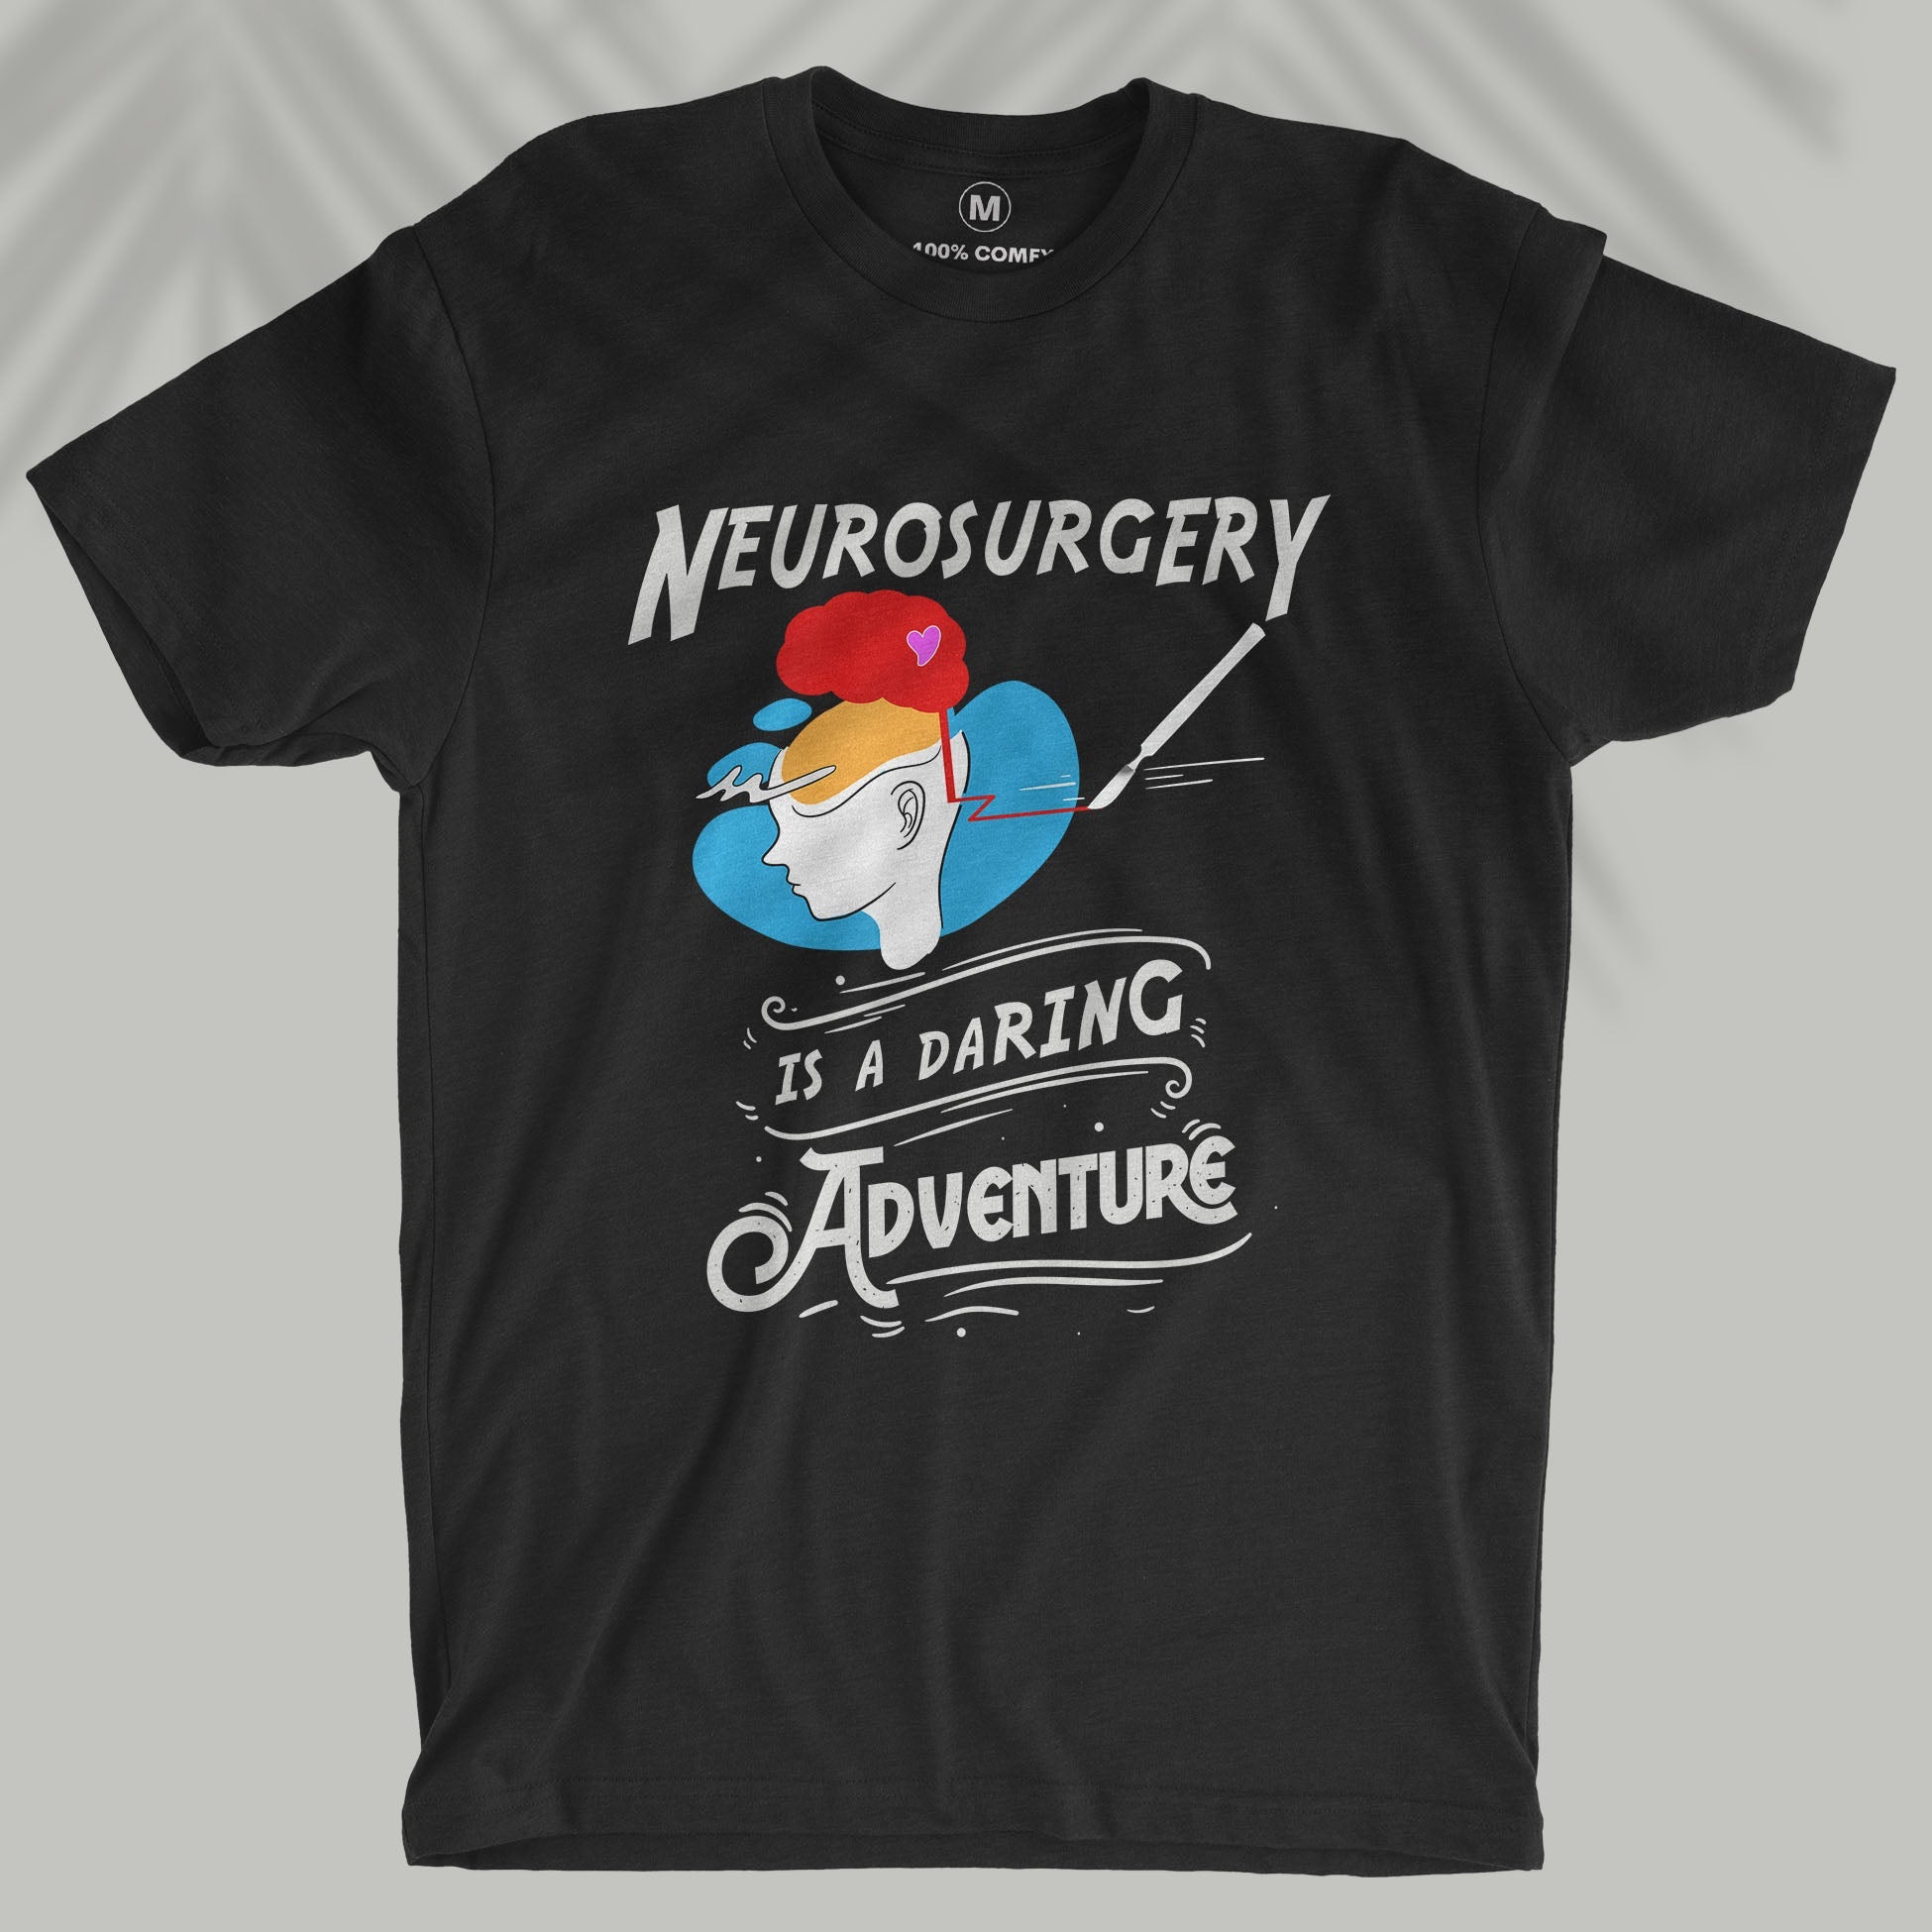 Neurosurgery is a daring adventure - Men T-shirt